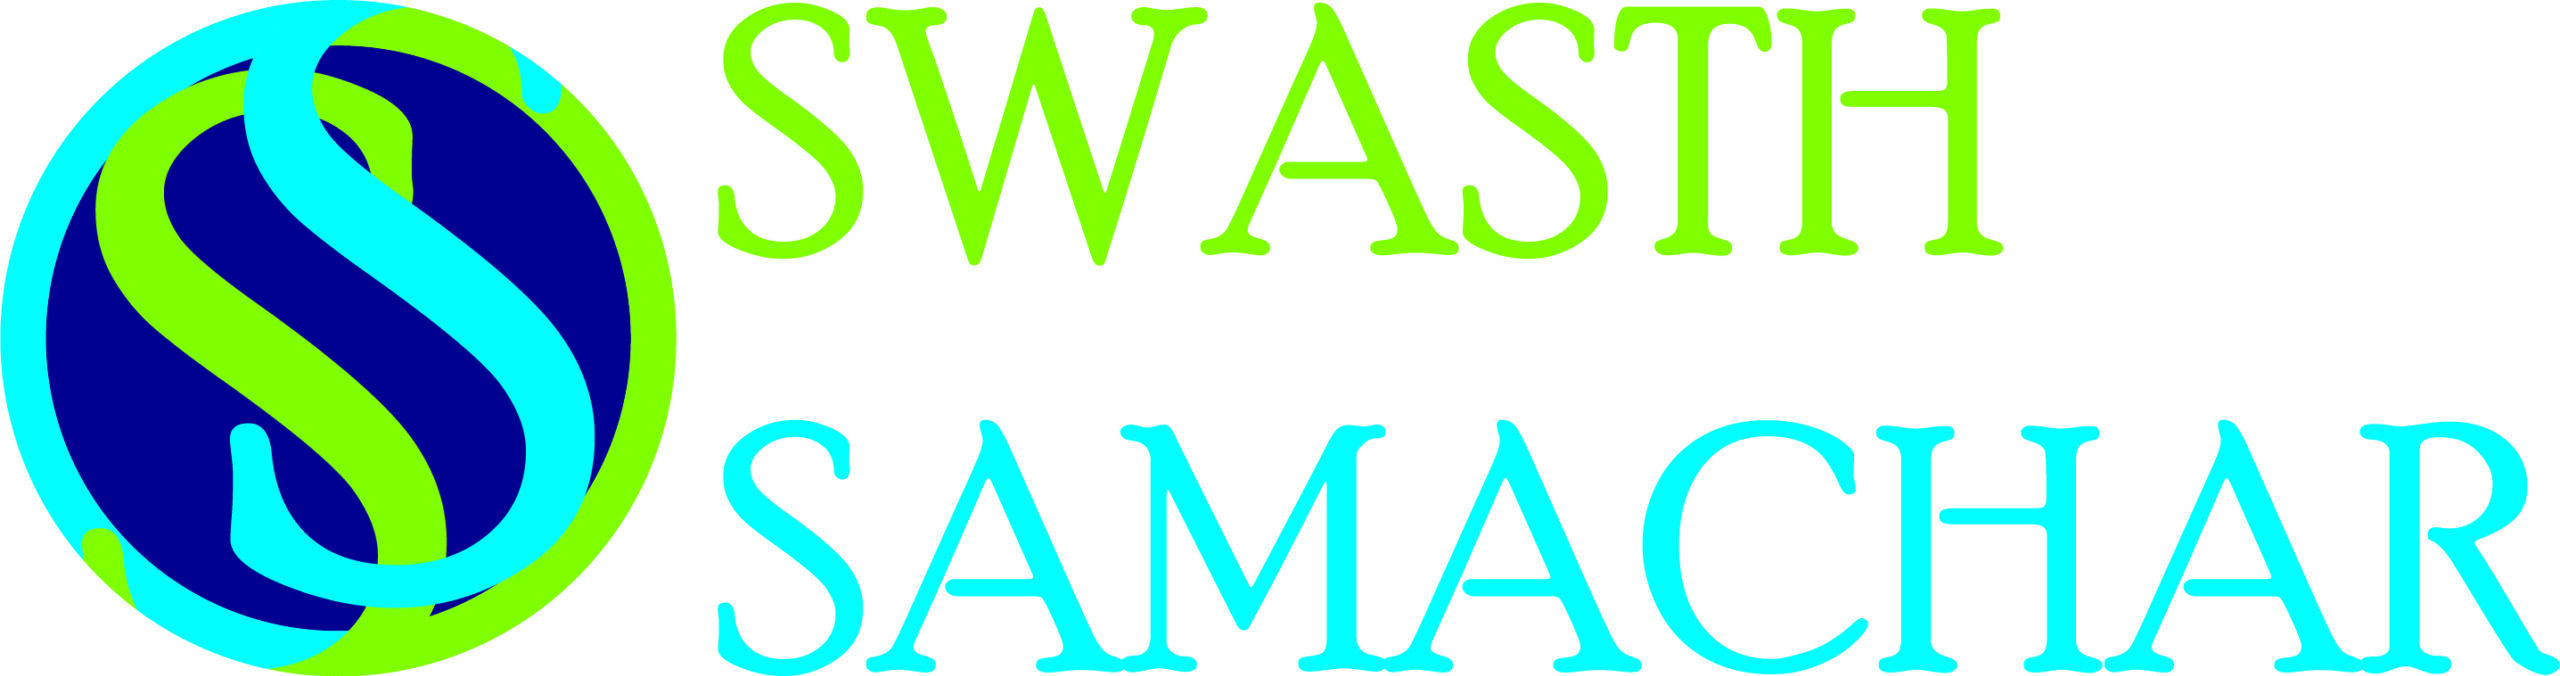 Swasth Samachar logo